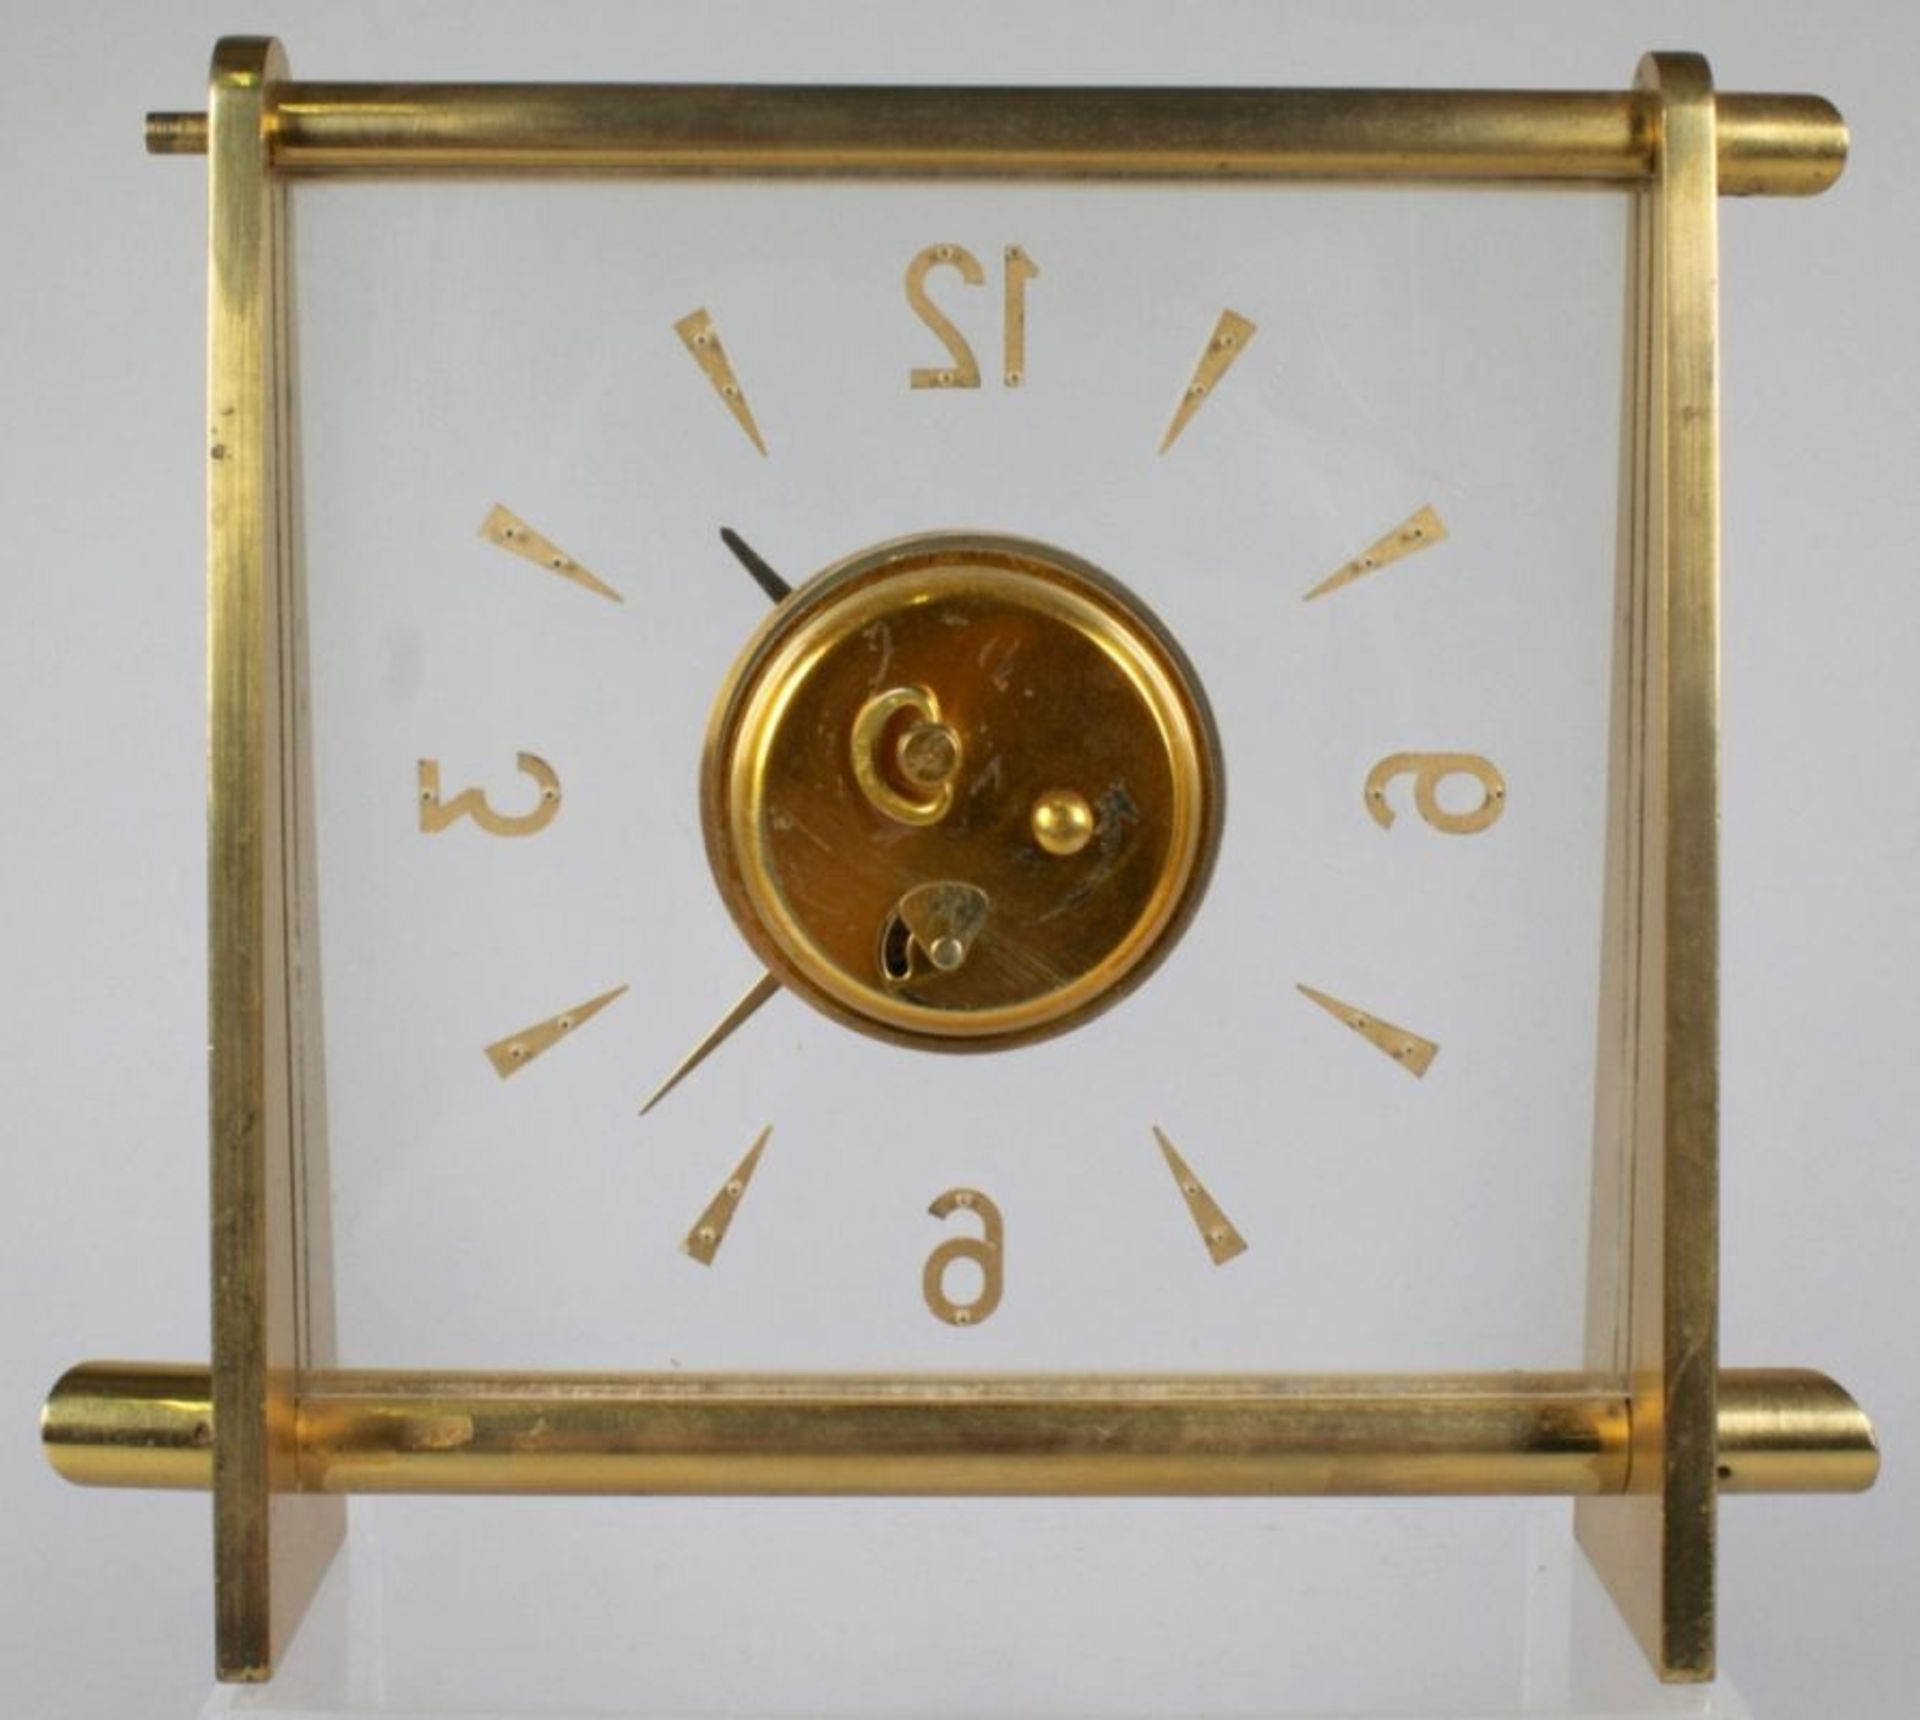 Tisch-Uhr, Jaeger Le Coultre, 50er Jahre, mechanisches Werk, Messinggehäuse, H 17 cm, 1oberer, - Bild 3 aus 3